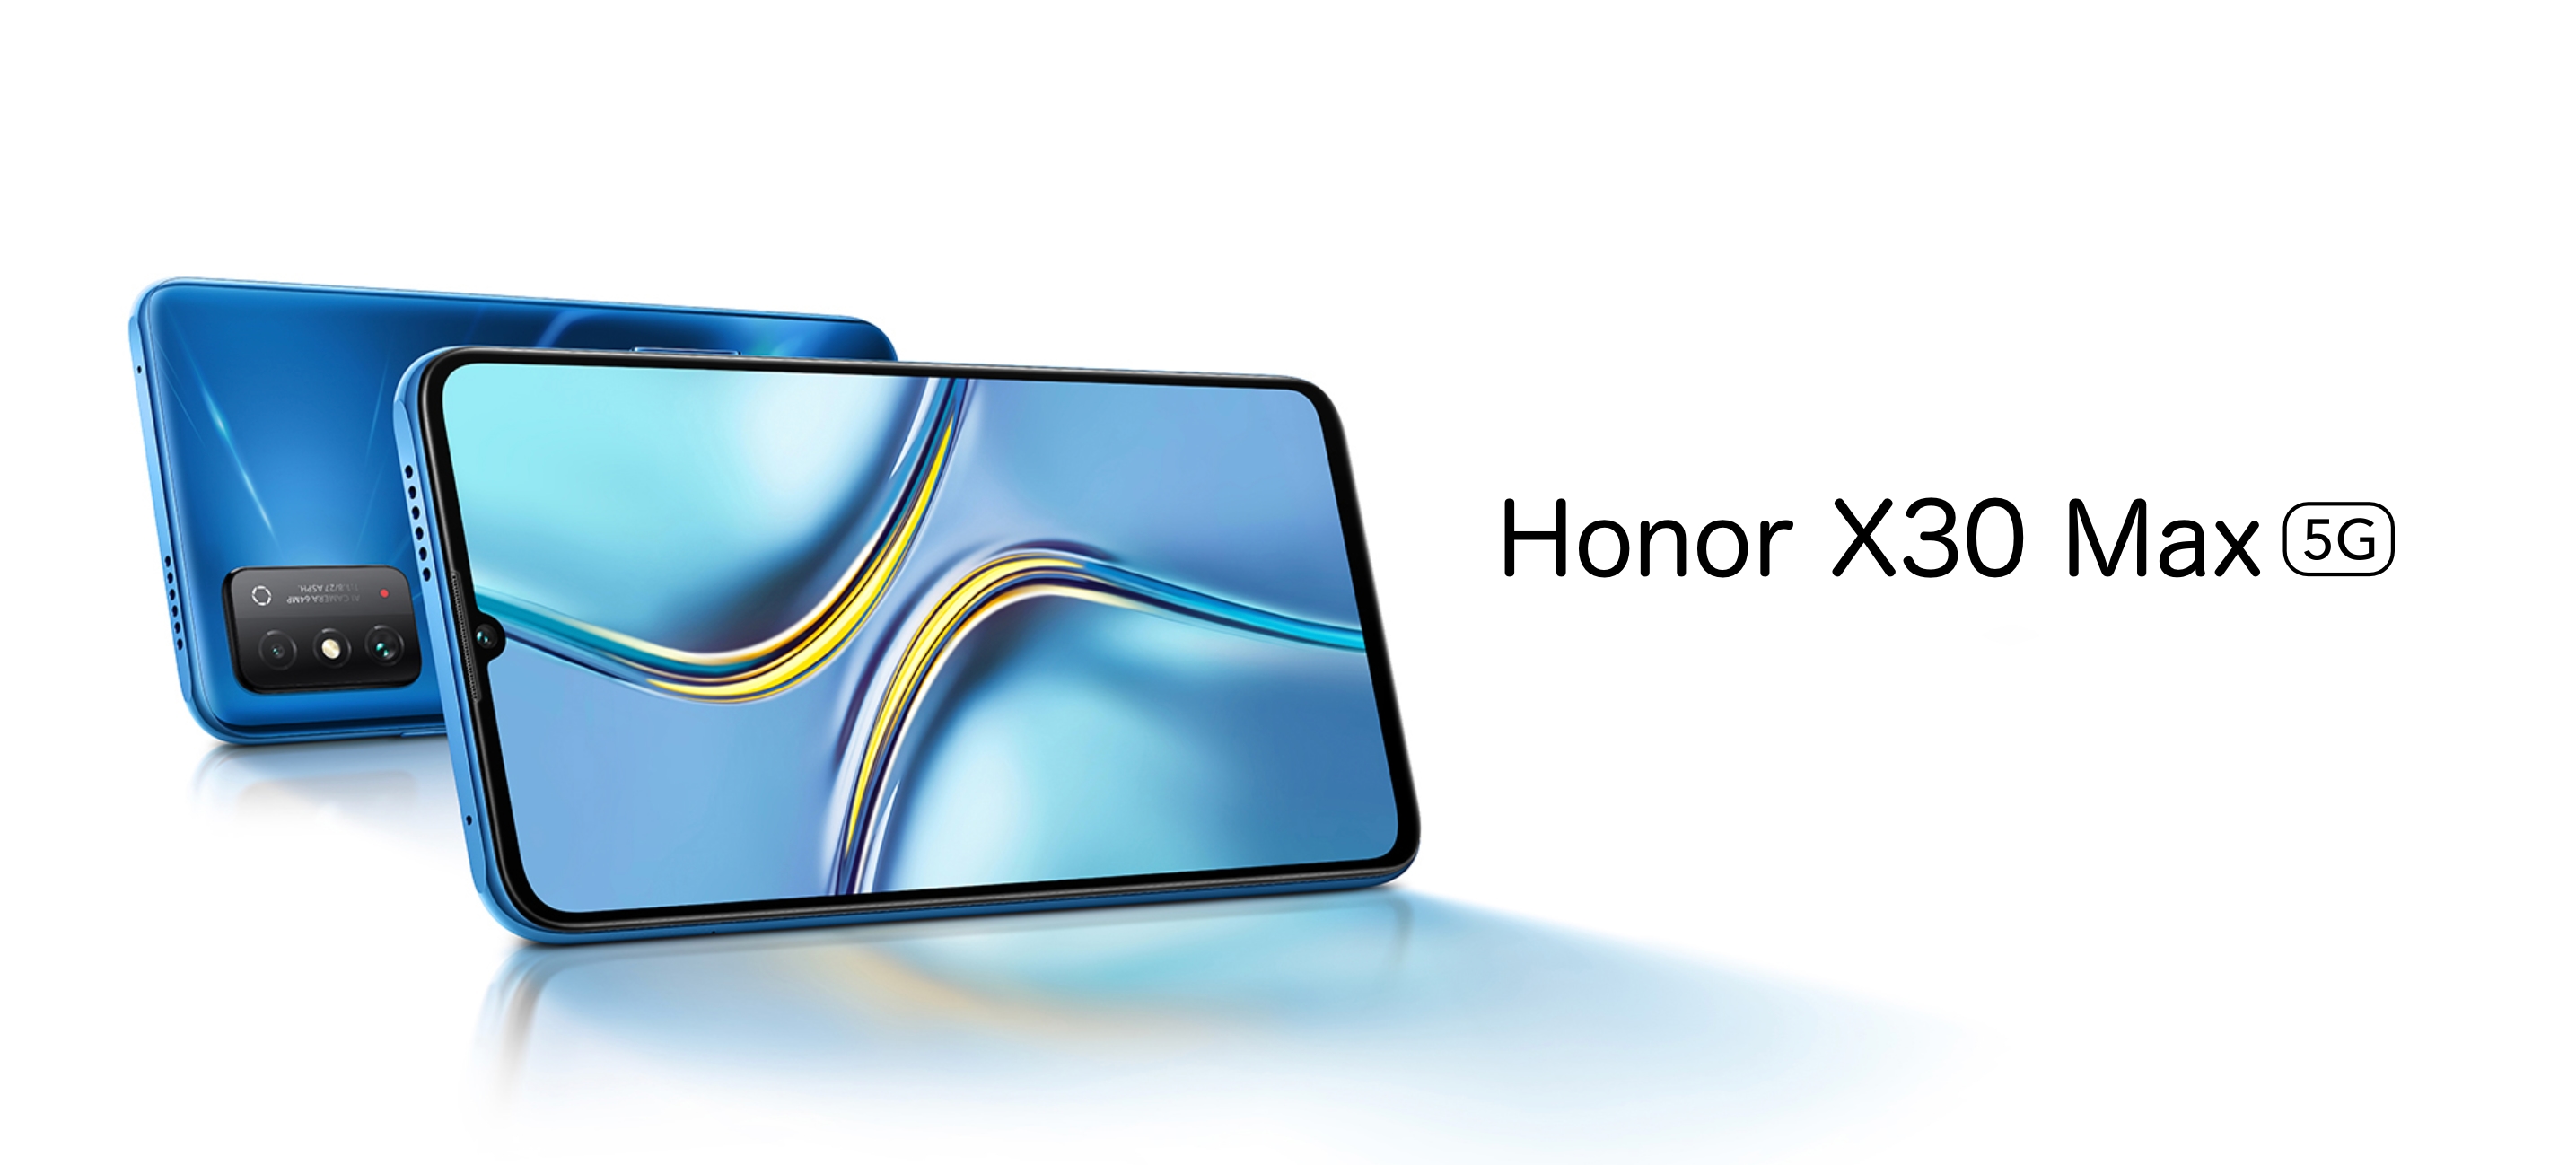 Honor X30 Max: smartphone con schermo da 7,09 pollici e chip MediaTek Dimensity 900 per 375 dollari